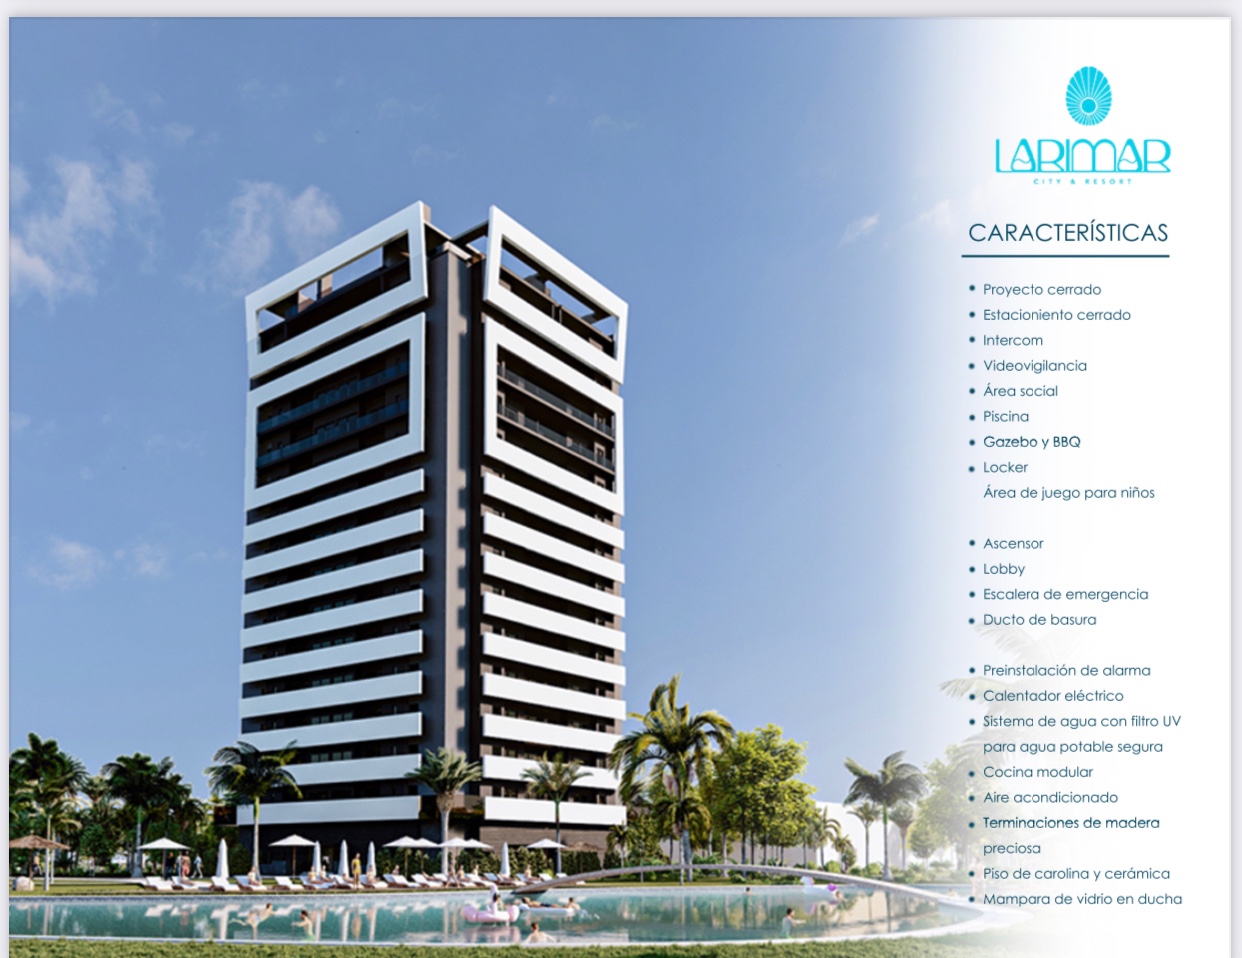 apartamentos - Venta de apartamentos en punta cana Larimar City & Resort República Dominicana  7